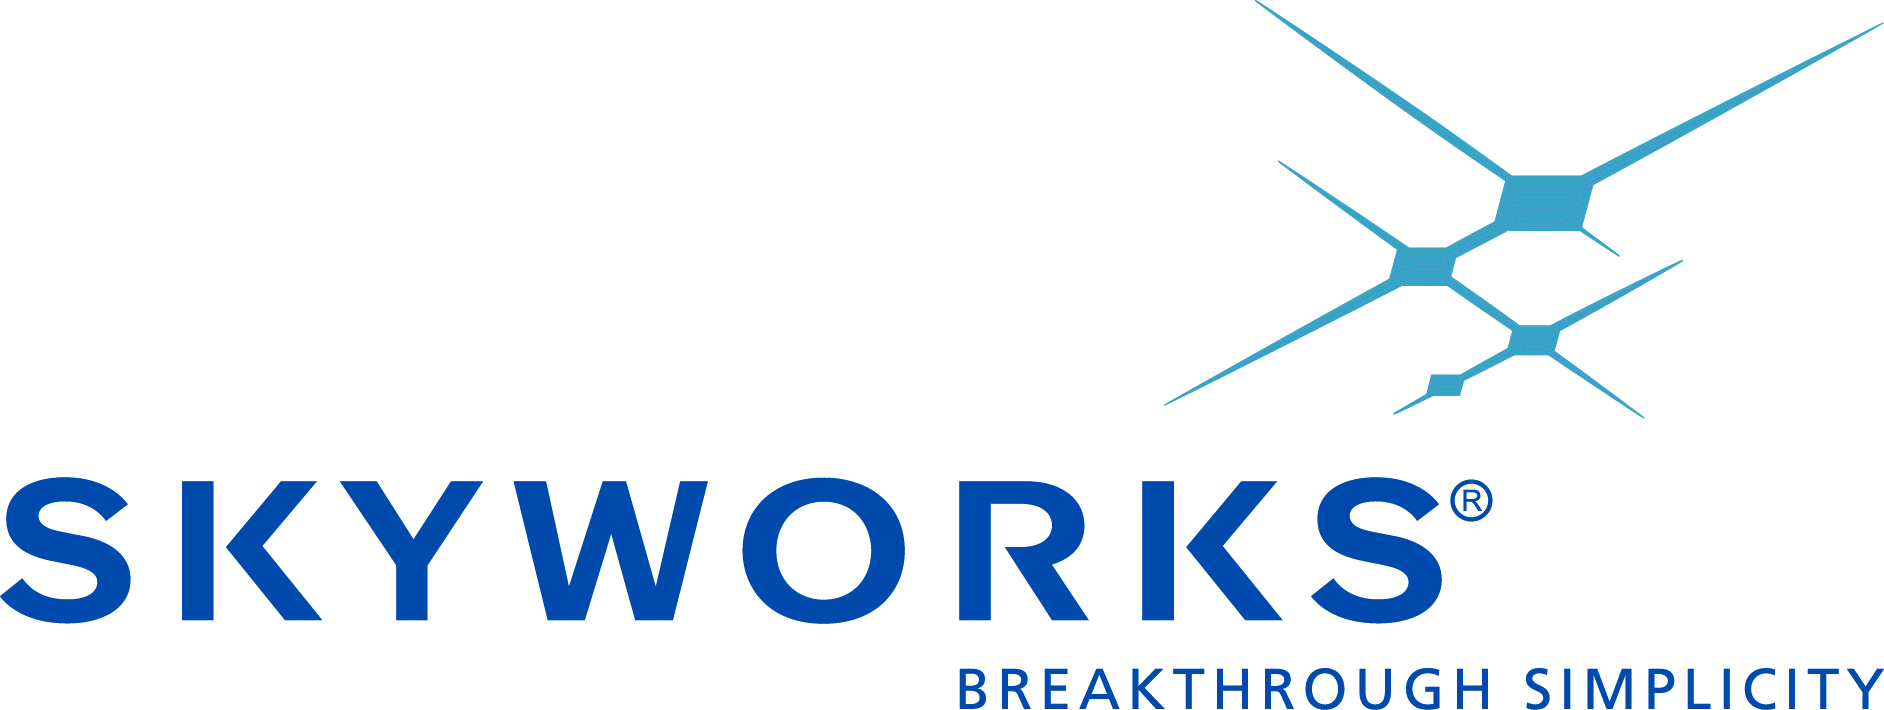 Skyworks Solutions, Inc. Logo photo - 1